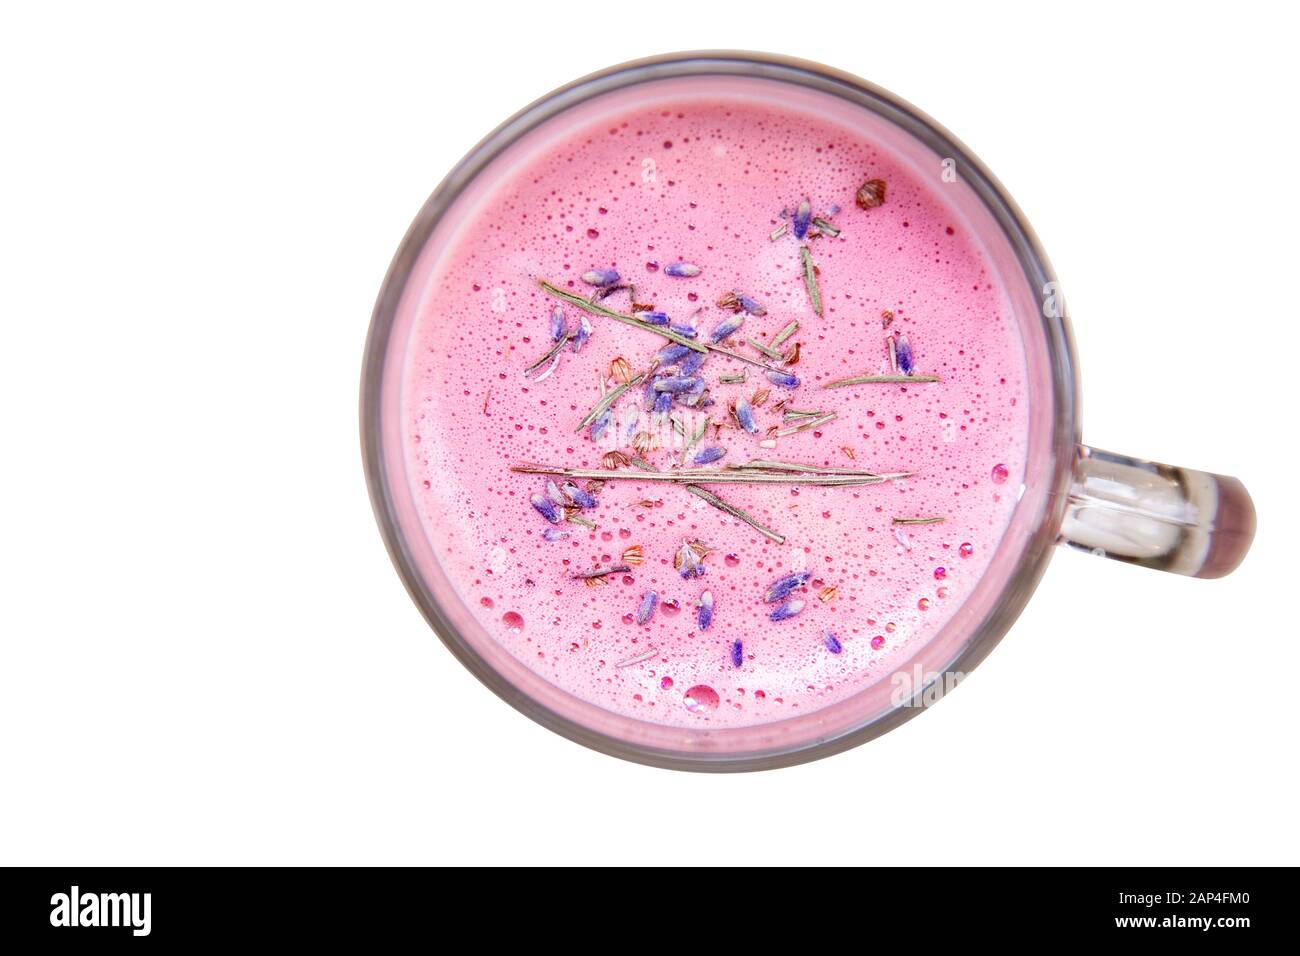 Café latte rose lavande dans un mug en verre avec fleurs, vue de dessus Banque D'Images